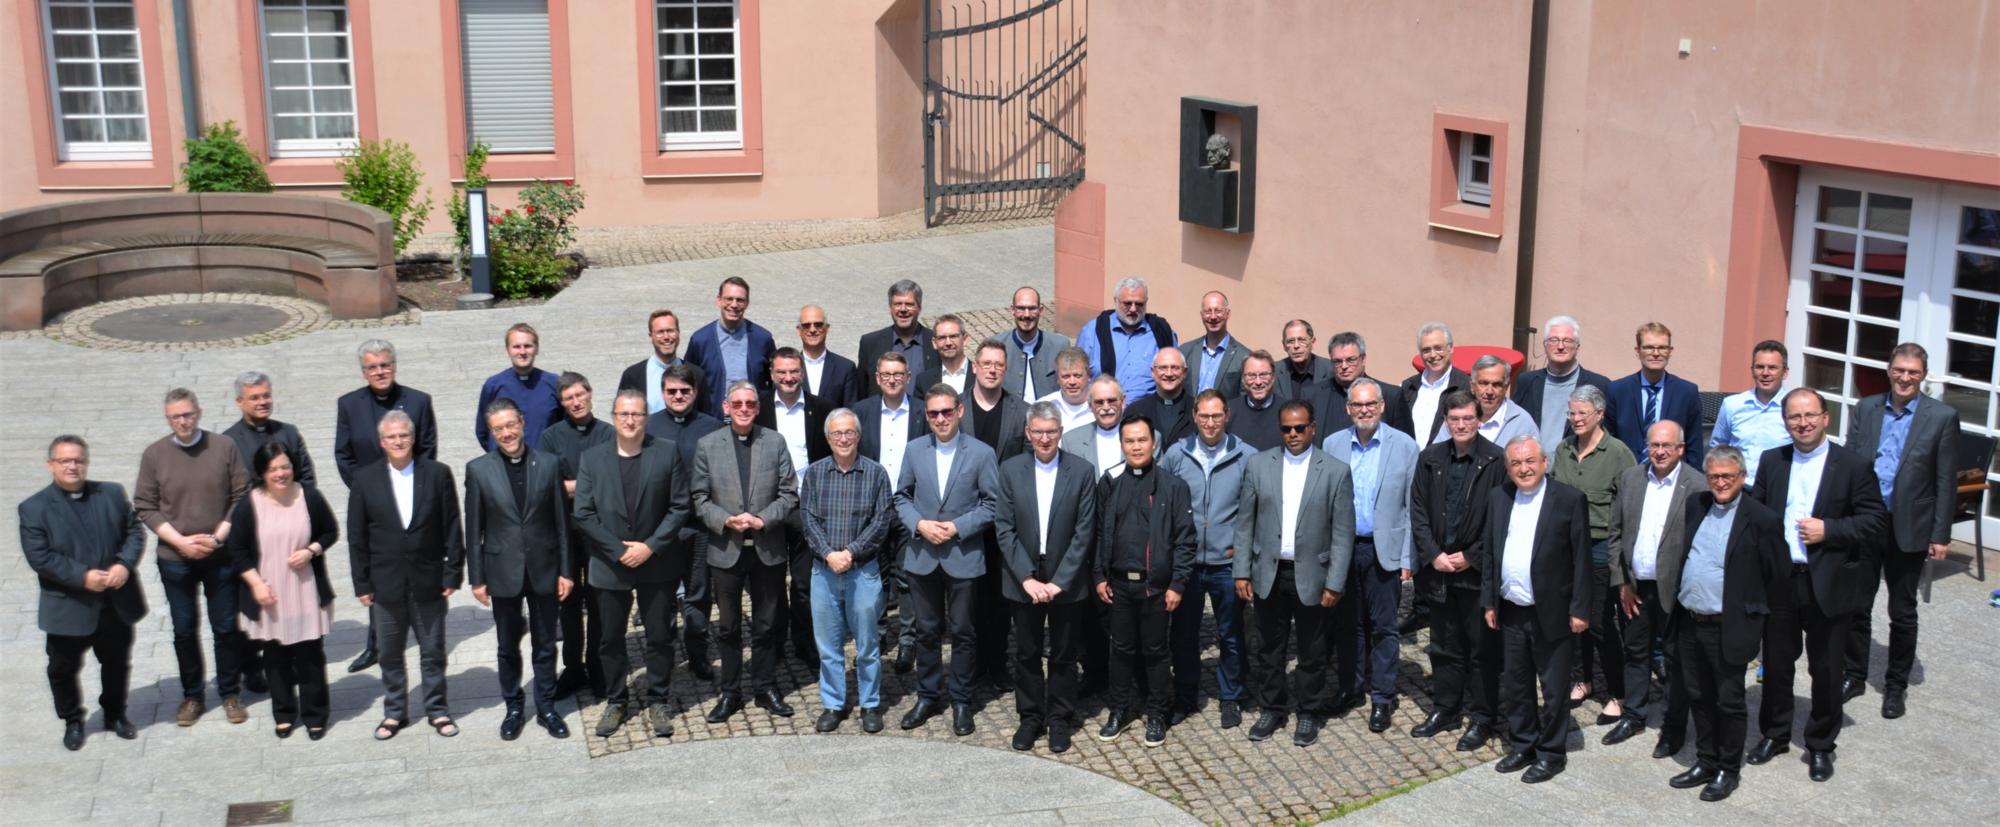 Mainz, 1. Juni 2022: Erstmals tagte die Konferenz der Leitenden Pfarrer im Erbacher Hof in Mainz. (c) Bistum Mainz / Matschak